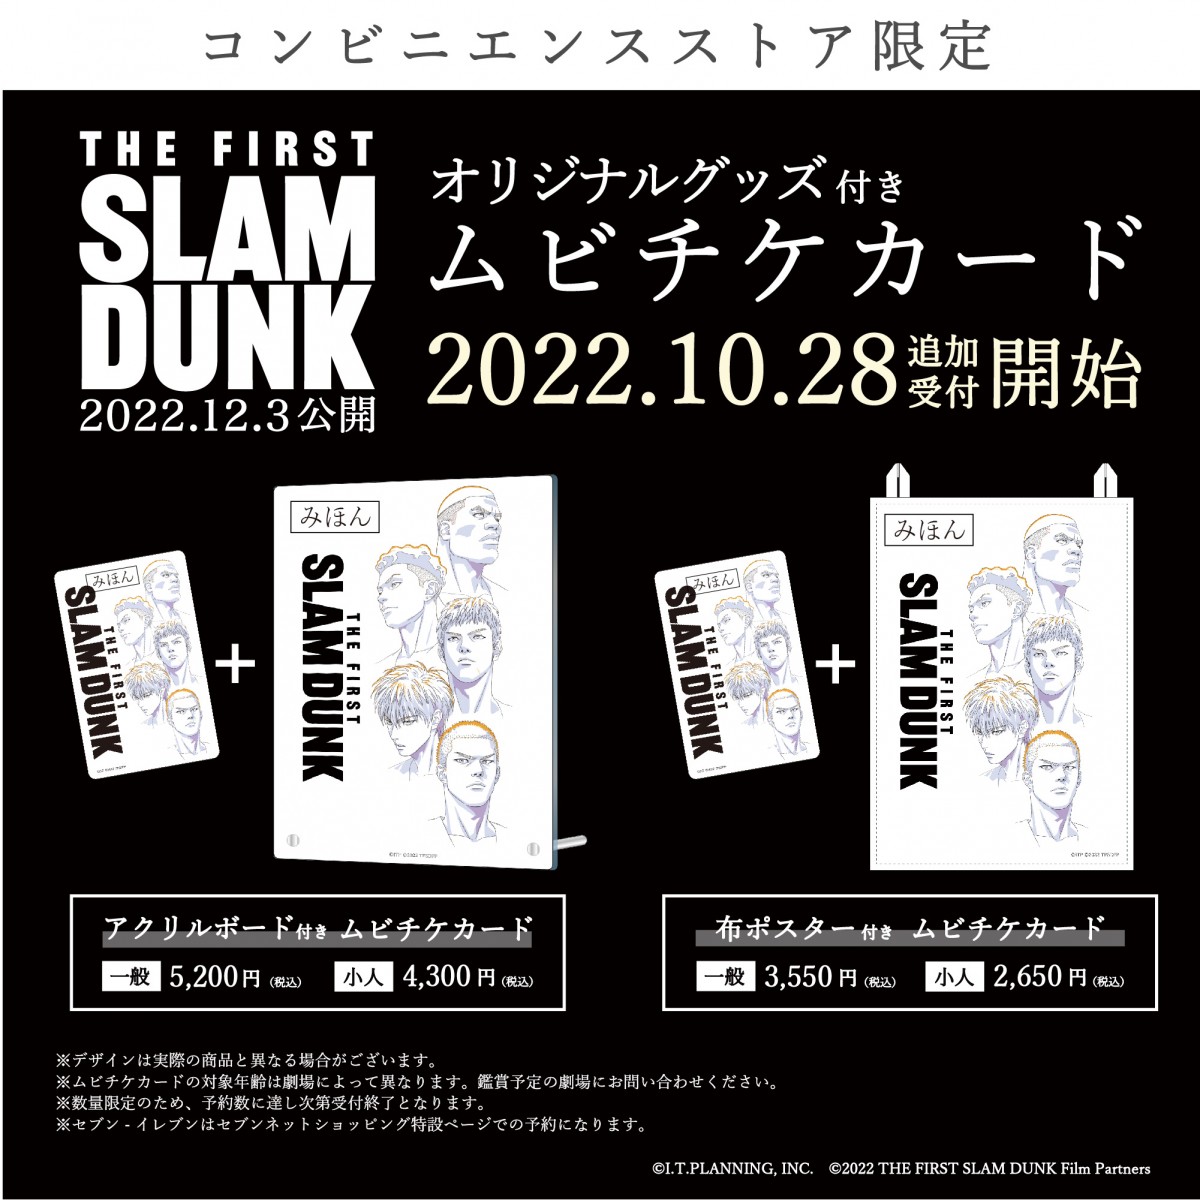 映画『THE FIRST SLAM DUNK』井上雄彦描き下ろしポスター公開　11.4に新情報解禁YouTube特番も